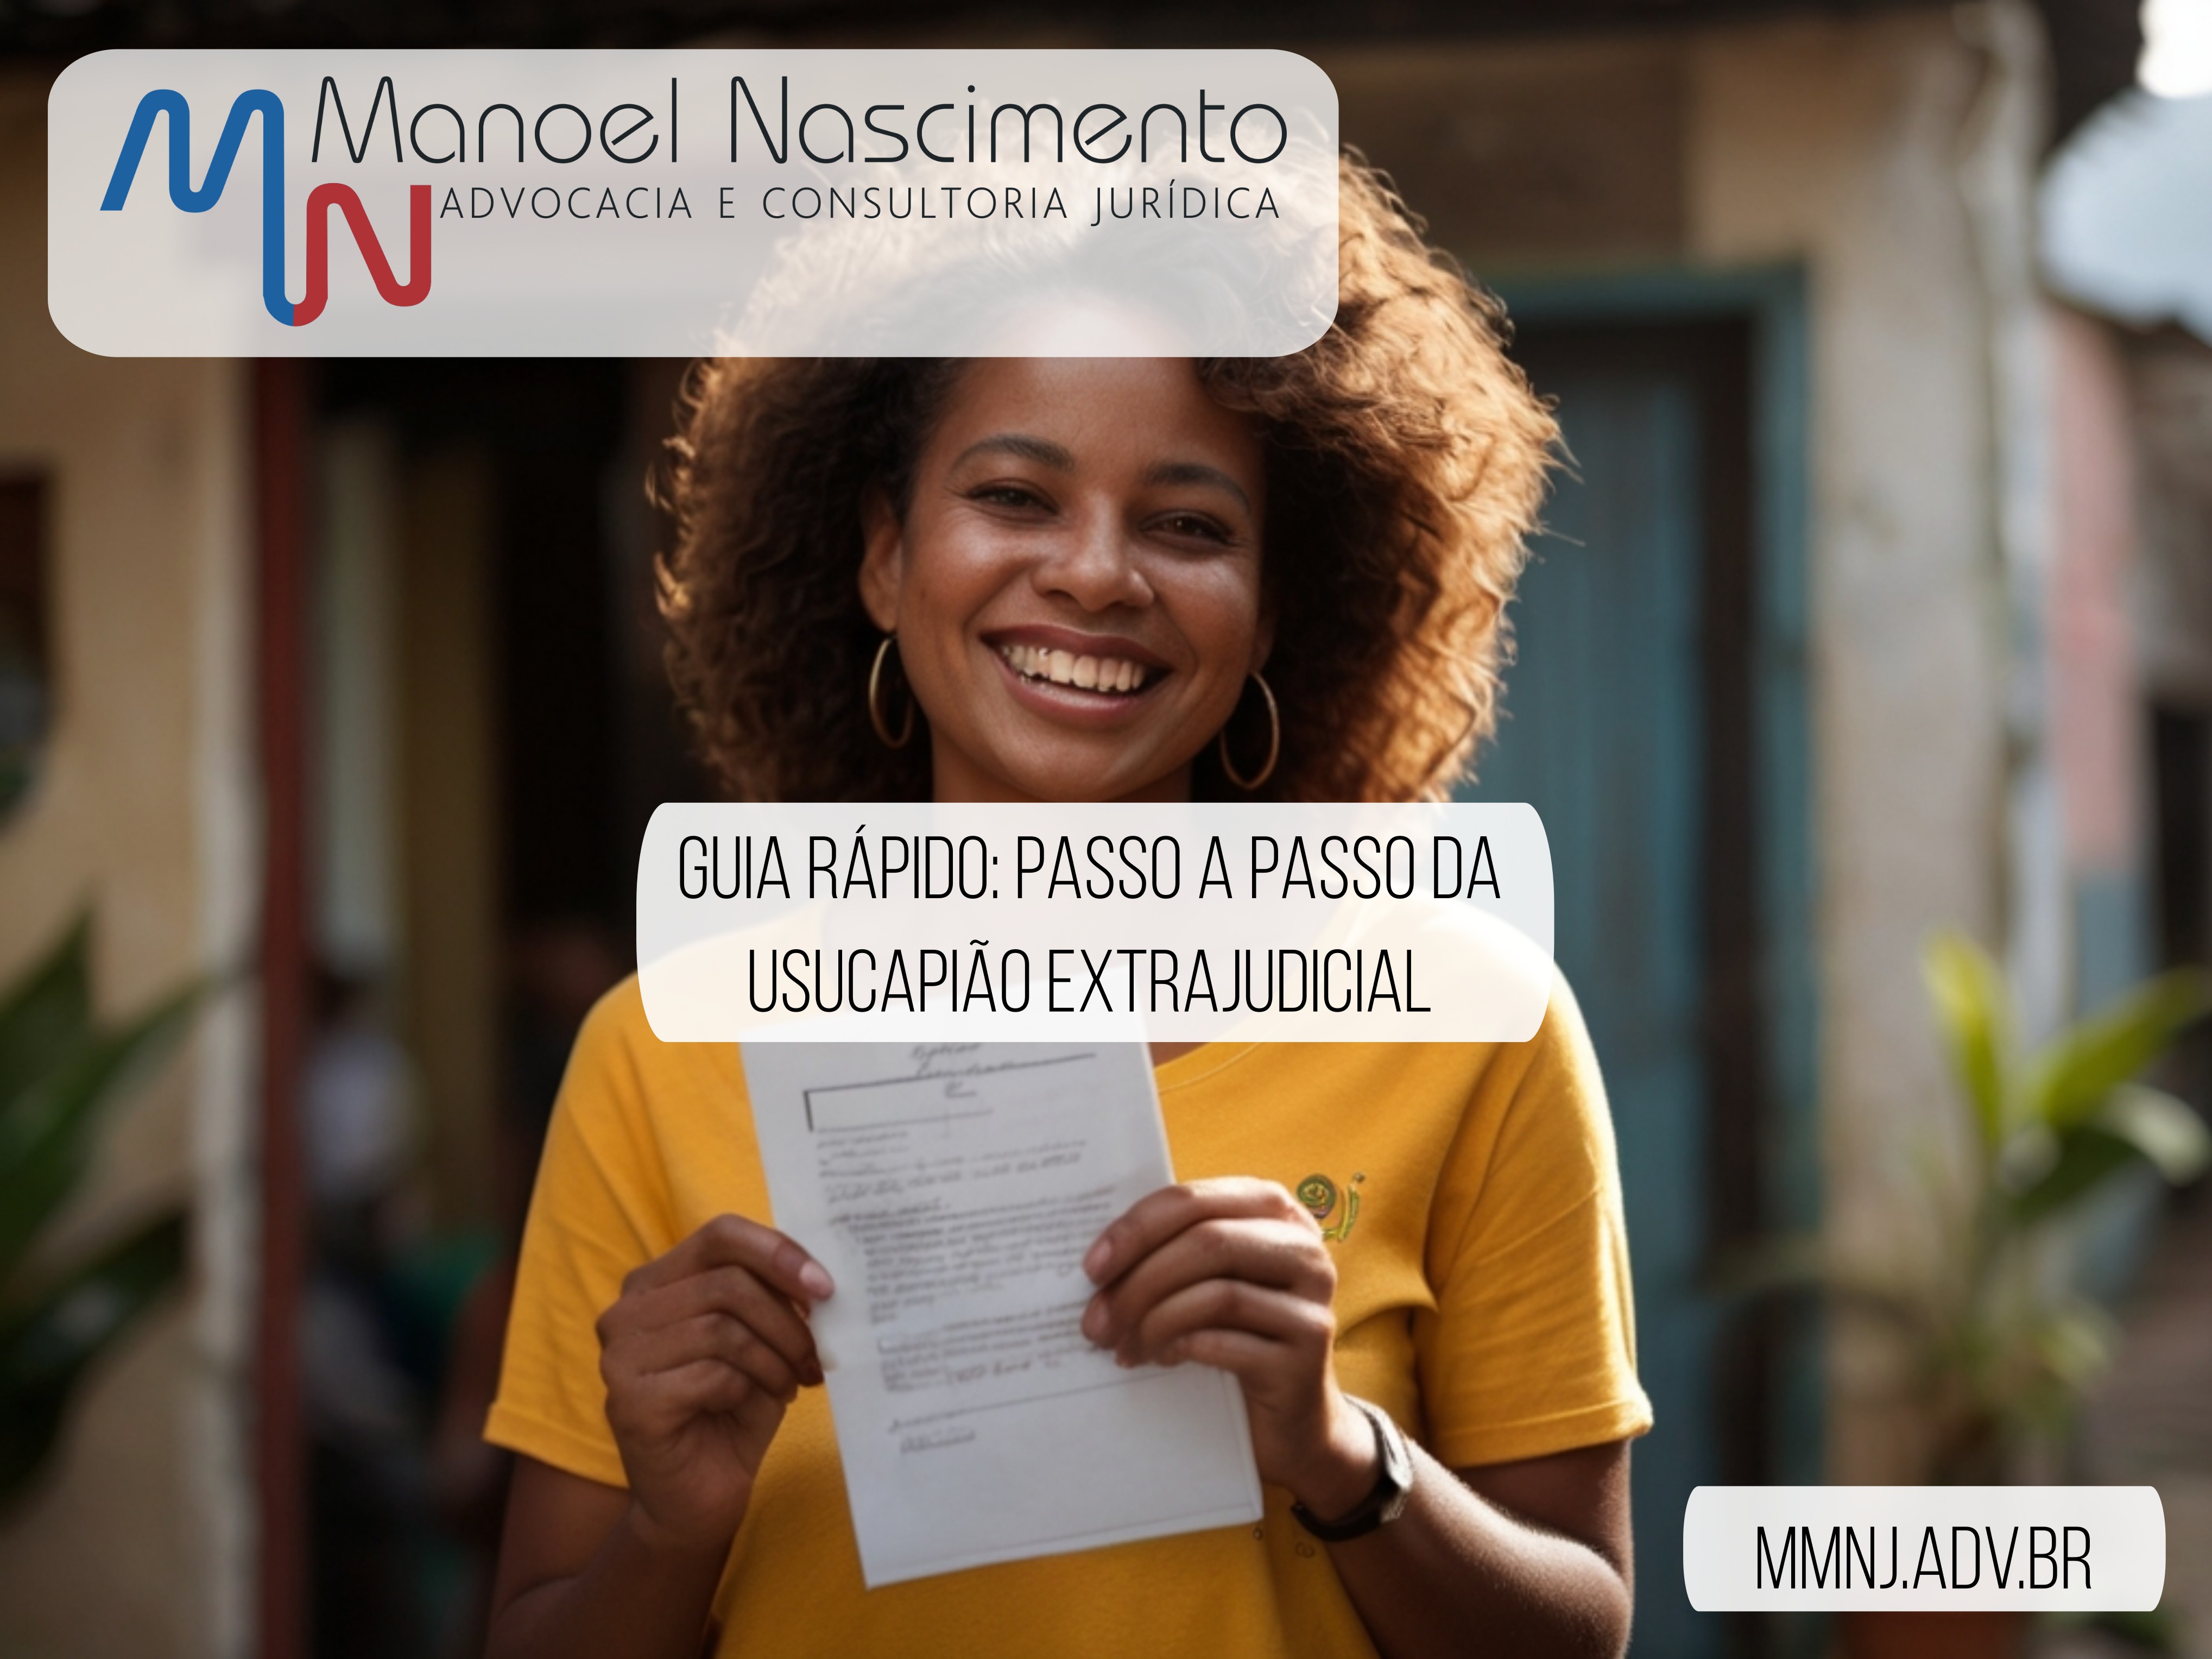 Guia rápido: passo a passo da usucapião extrajudicial. Descrição: mulher negra brasileira sorri enquanto segura um documento em frente à sua casa.